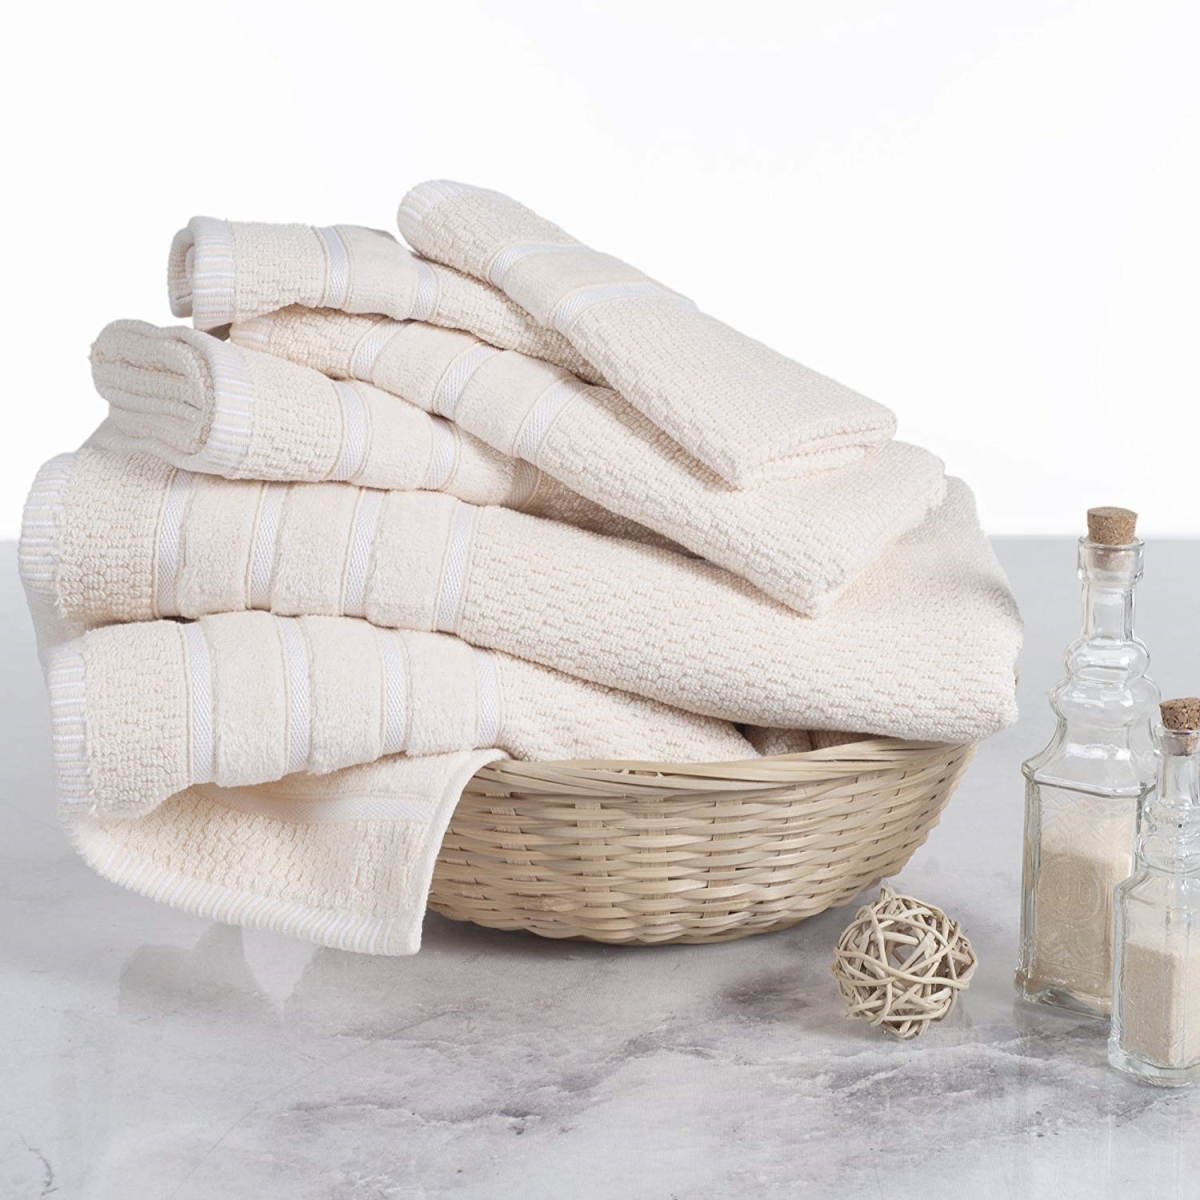 67a-74223 100 Percent Cotton Rice Weave 6 Piece Towel Set - Ivory